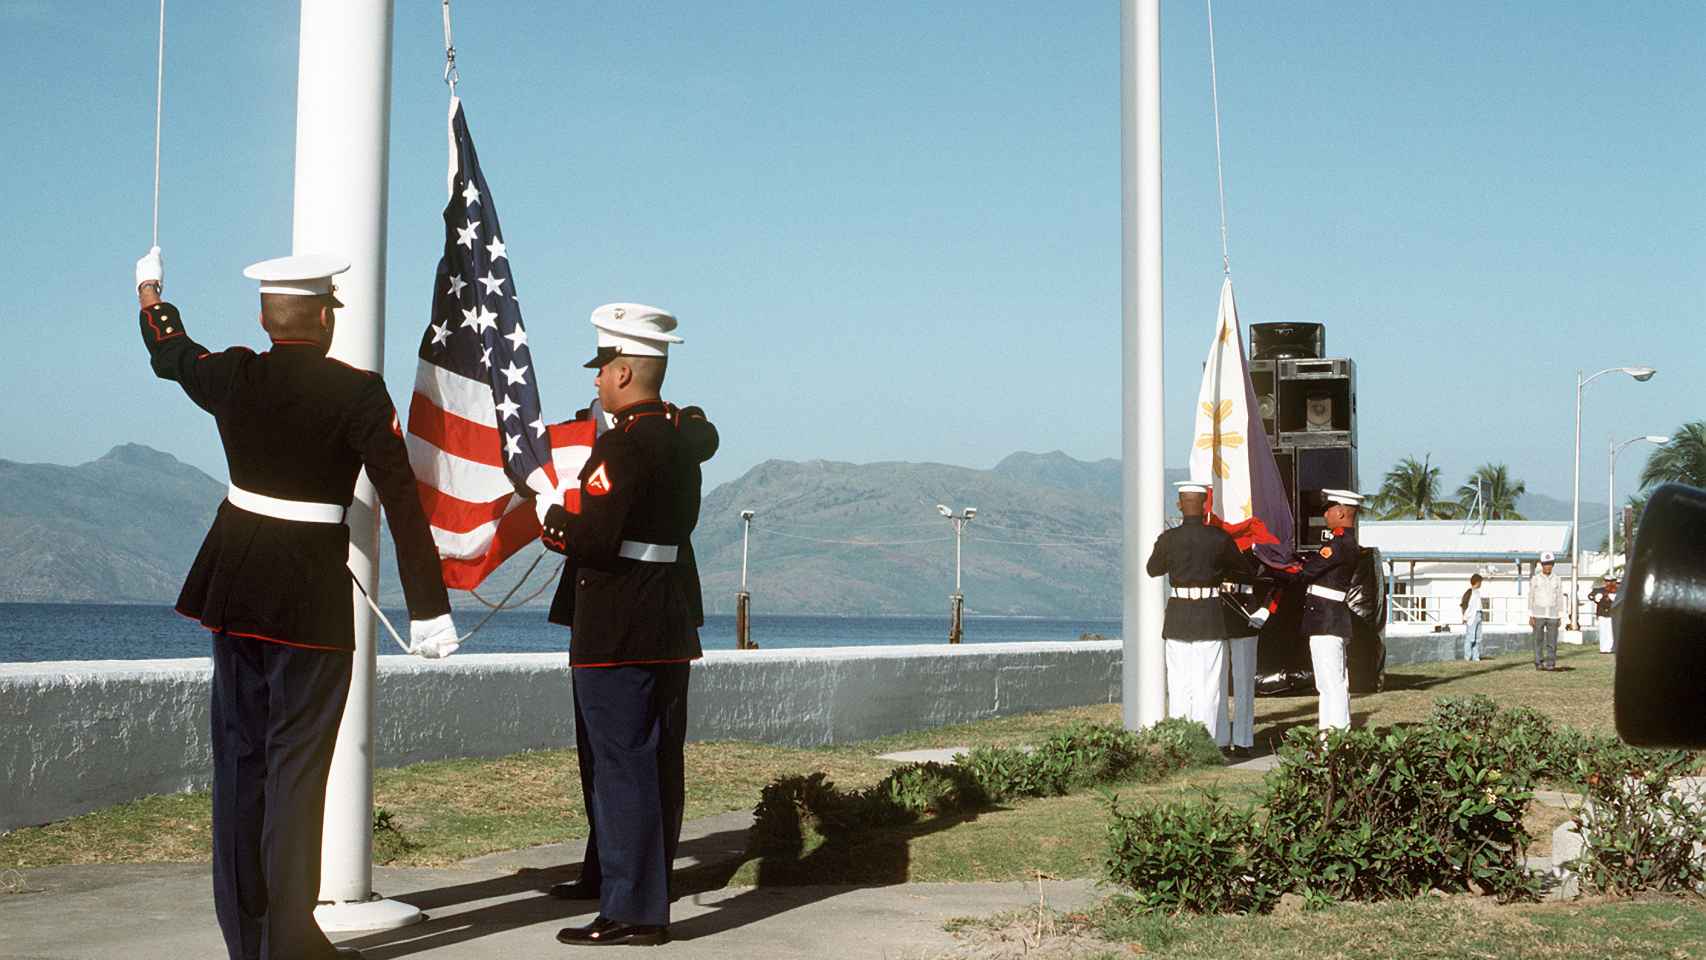 Los infantes de marina estadounidenses levantan la bandera estadounidense mientras sus homólogos filipinos levantan la suya.